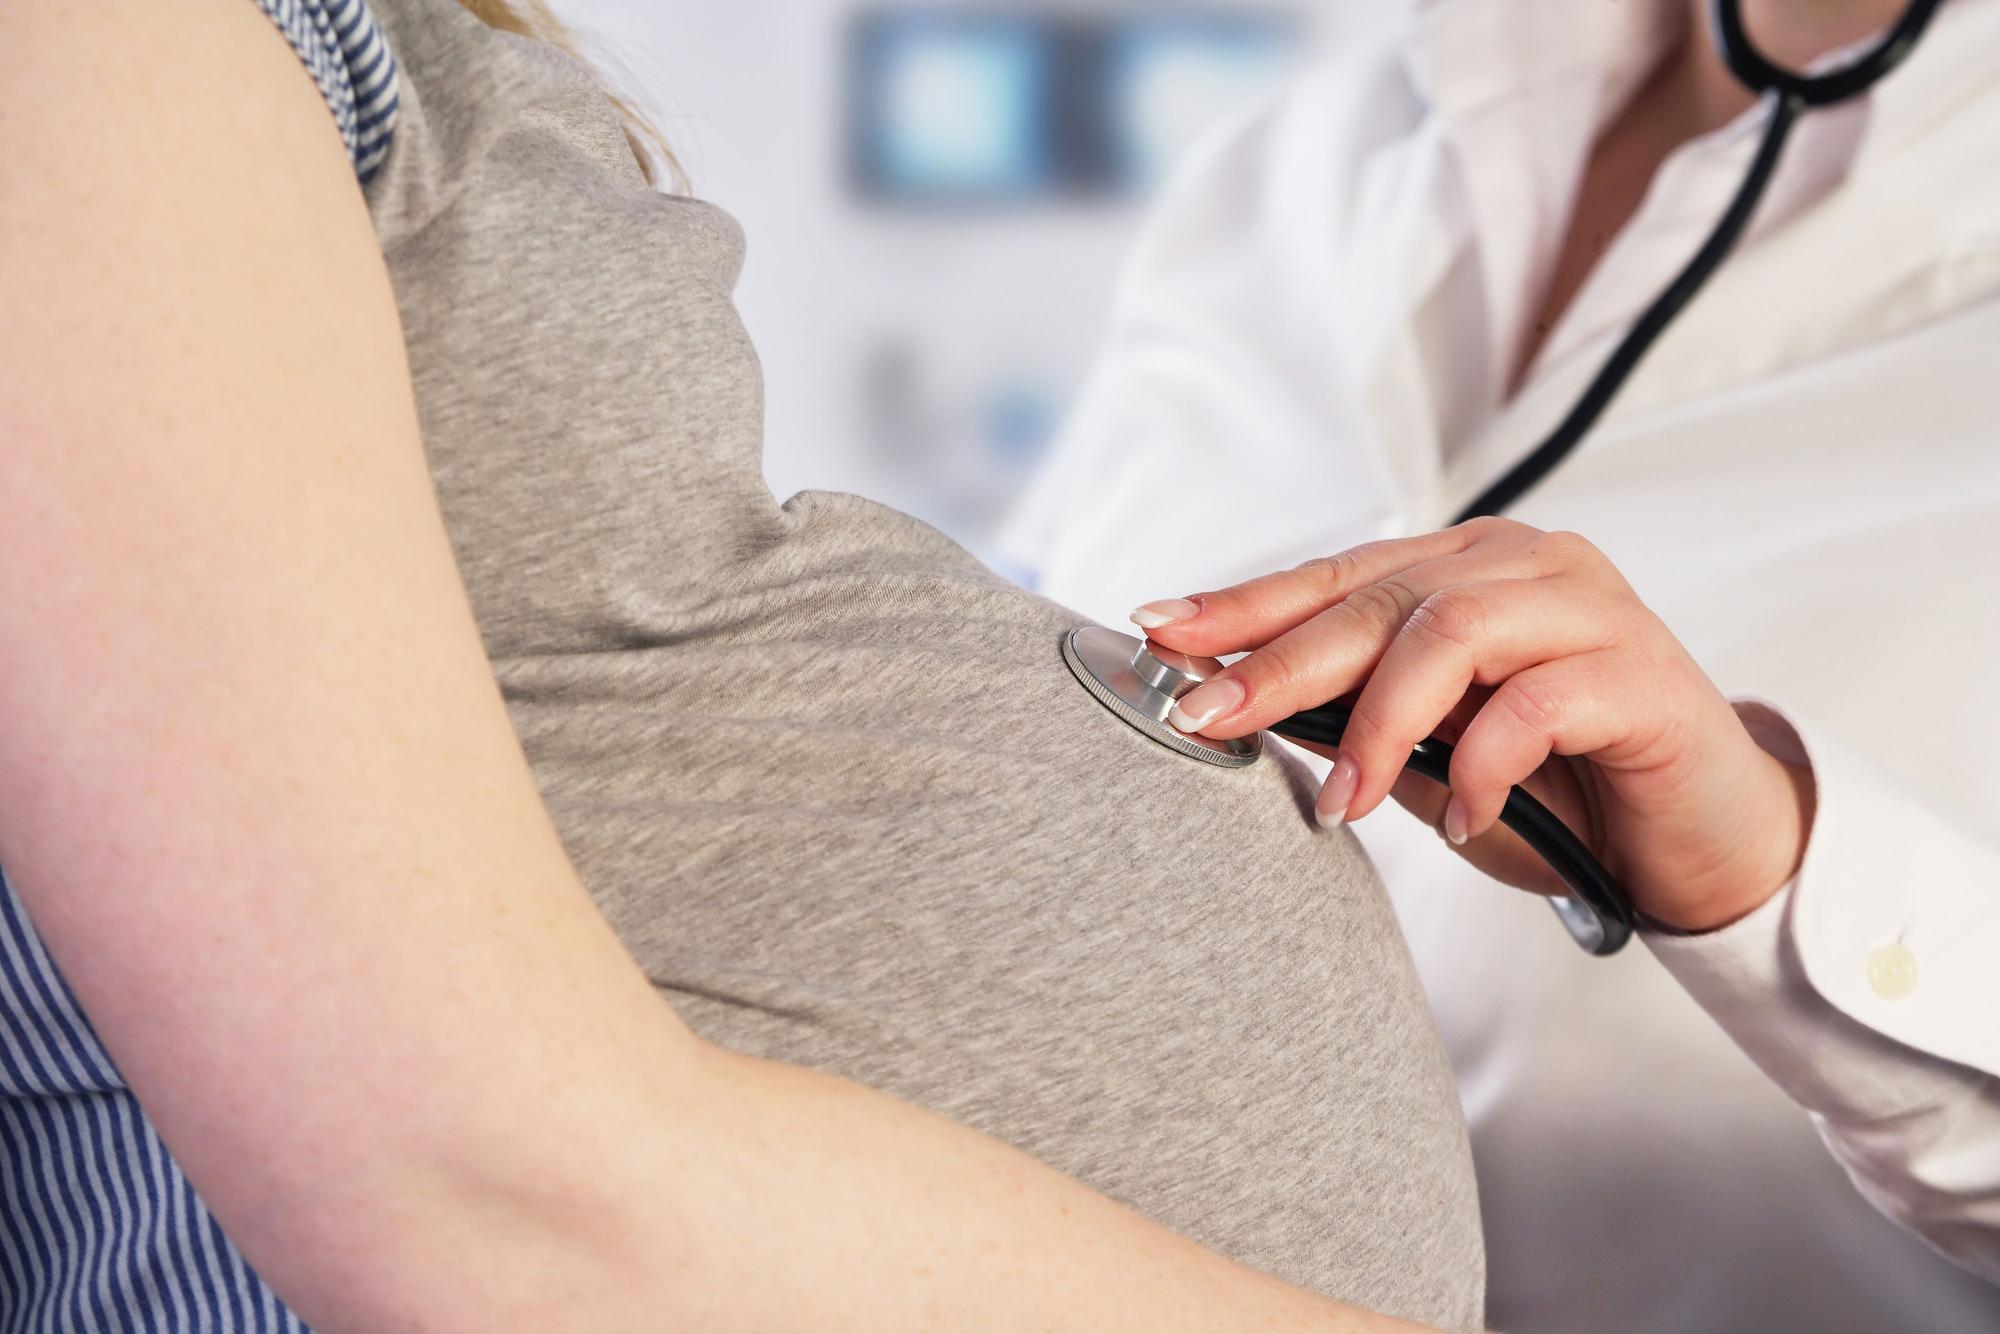 Una sanitaria reconoce a una mujer embarazada